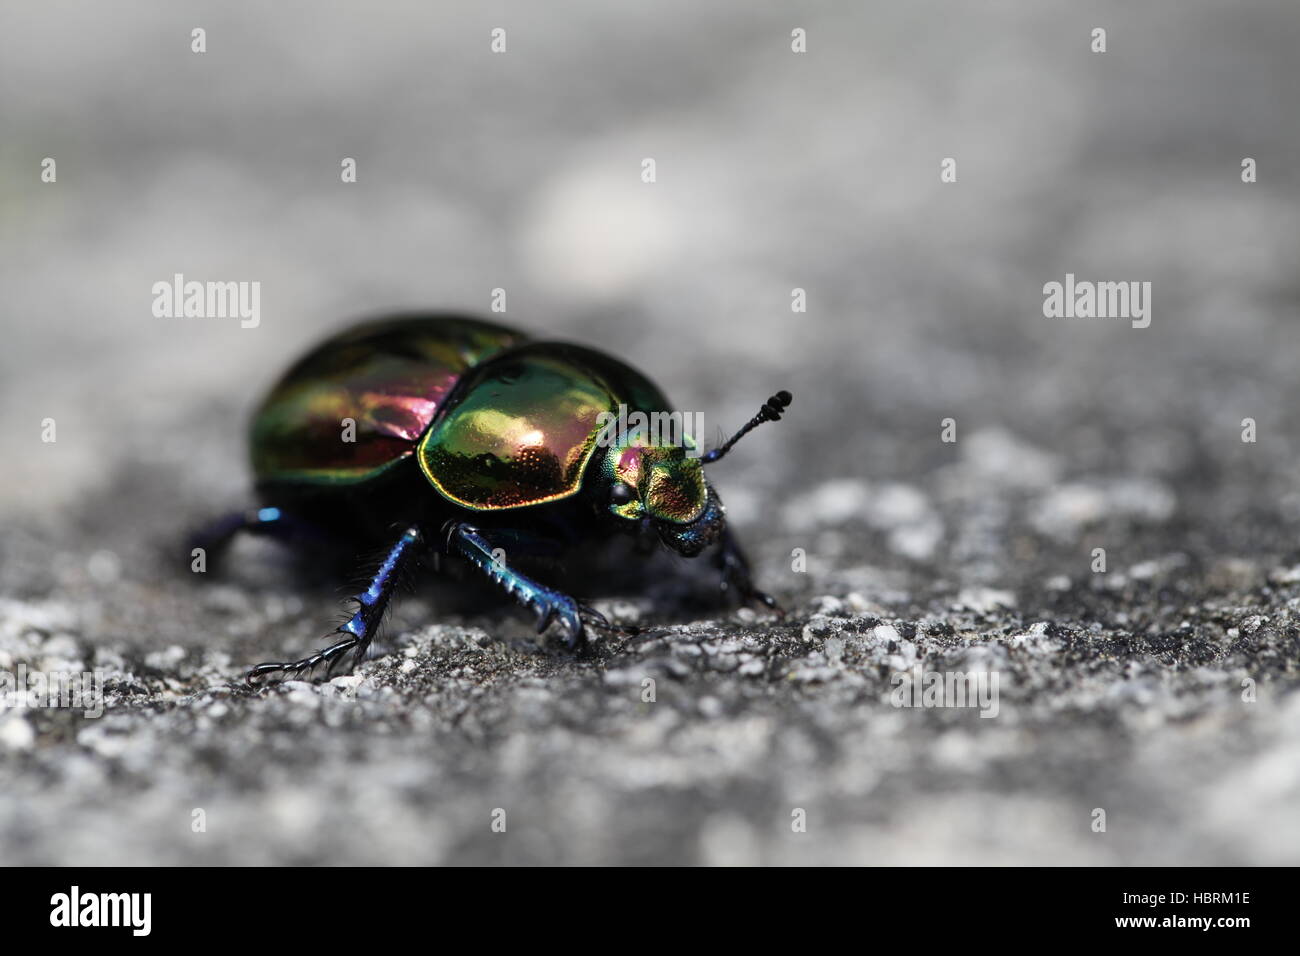 Tierra-aburrido de los escarabajos Foto de stock